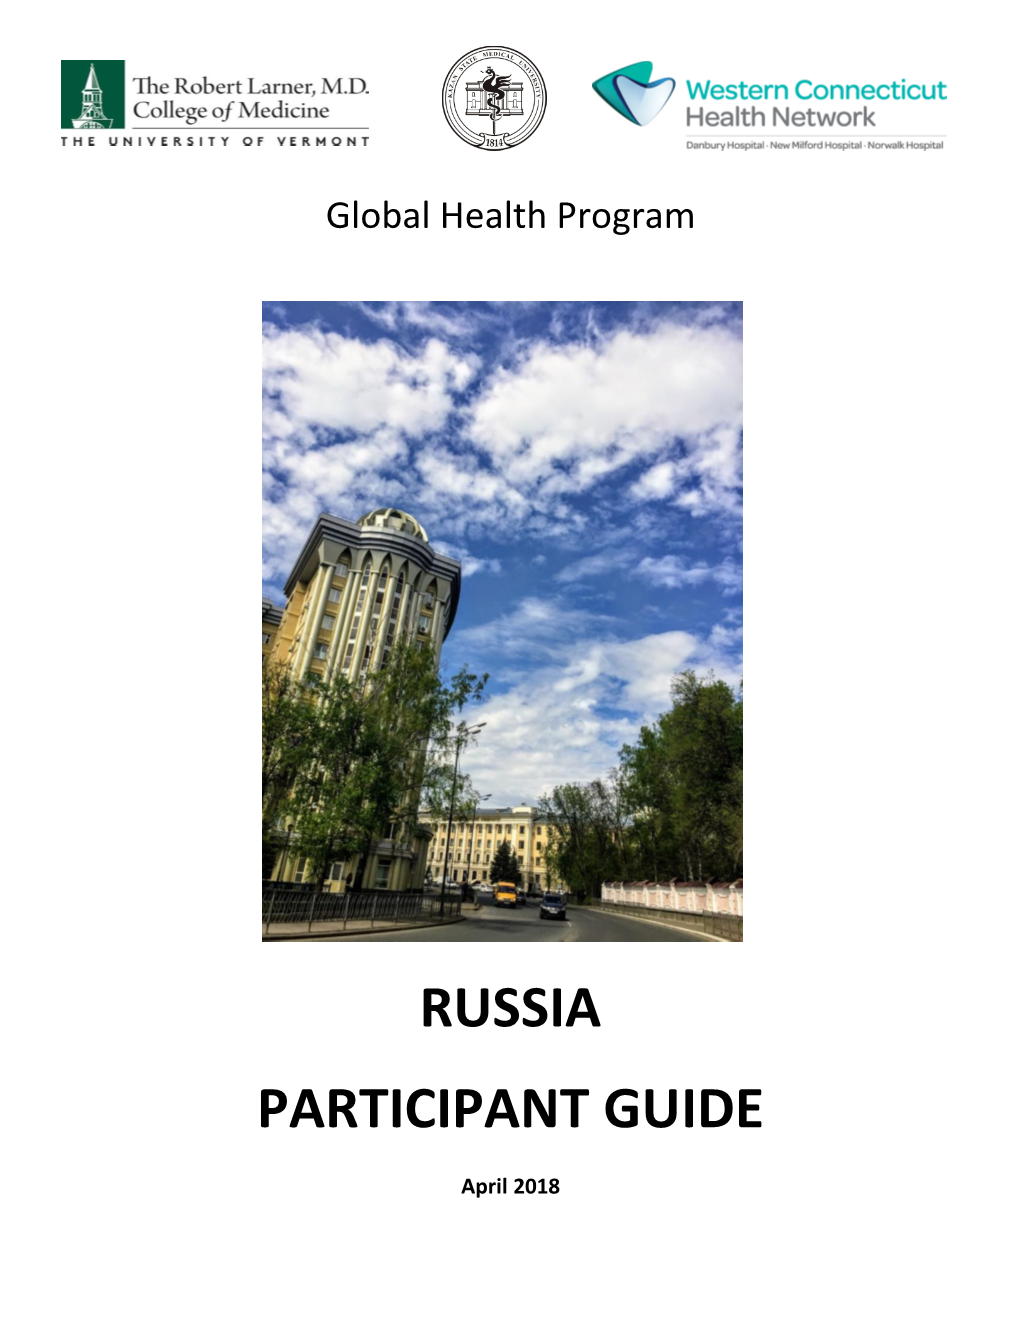 Russia Participant Guide